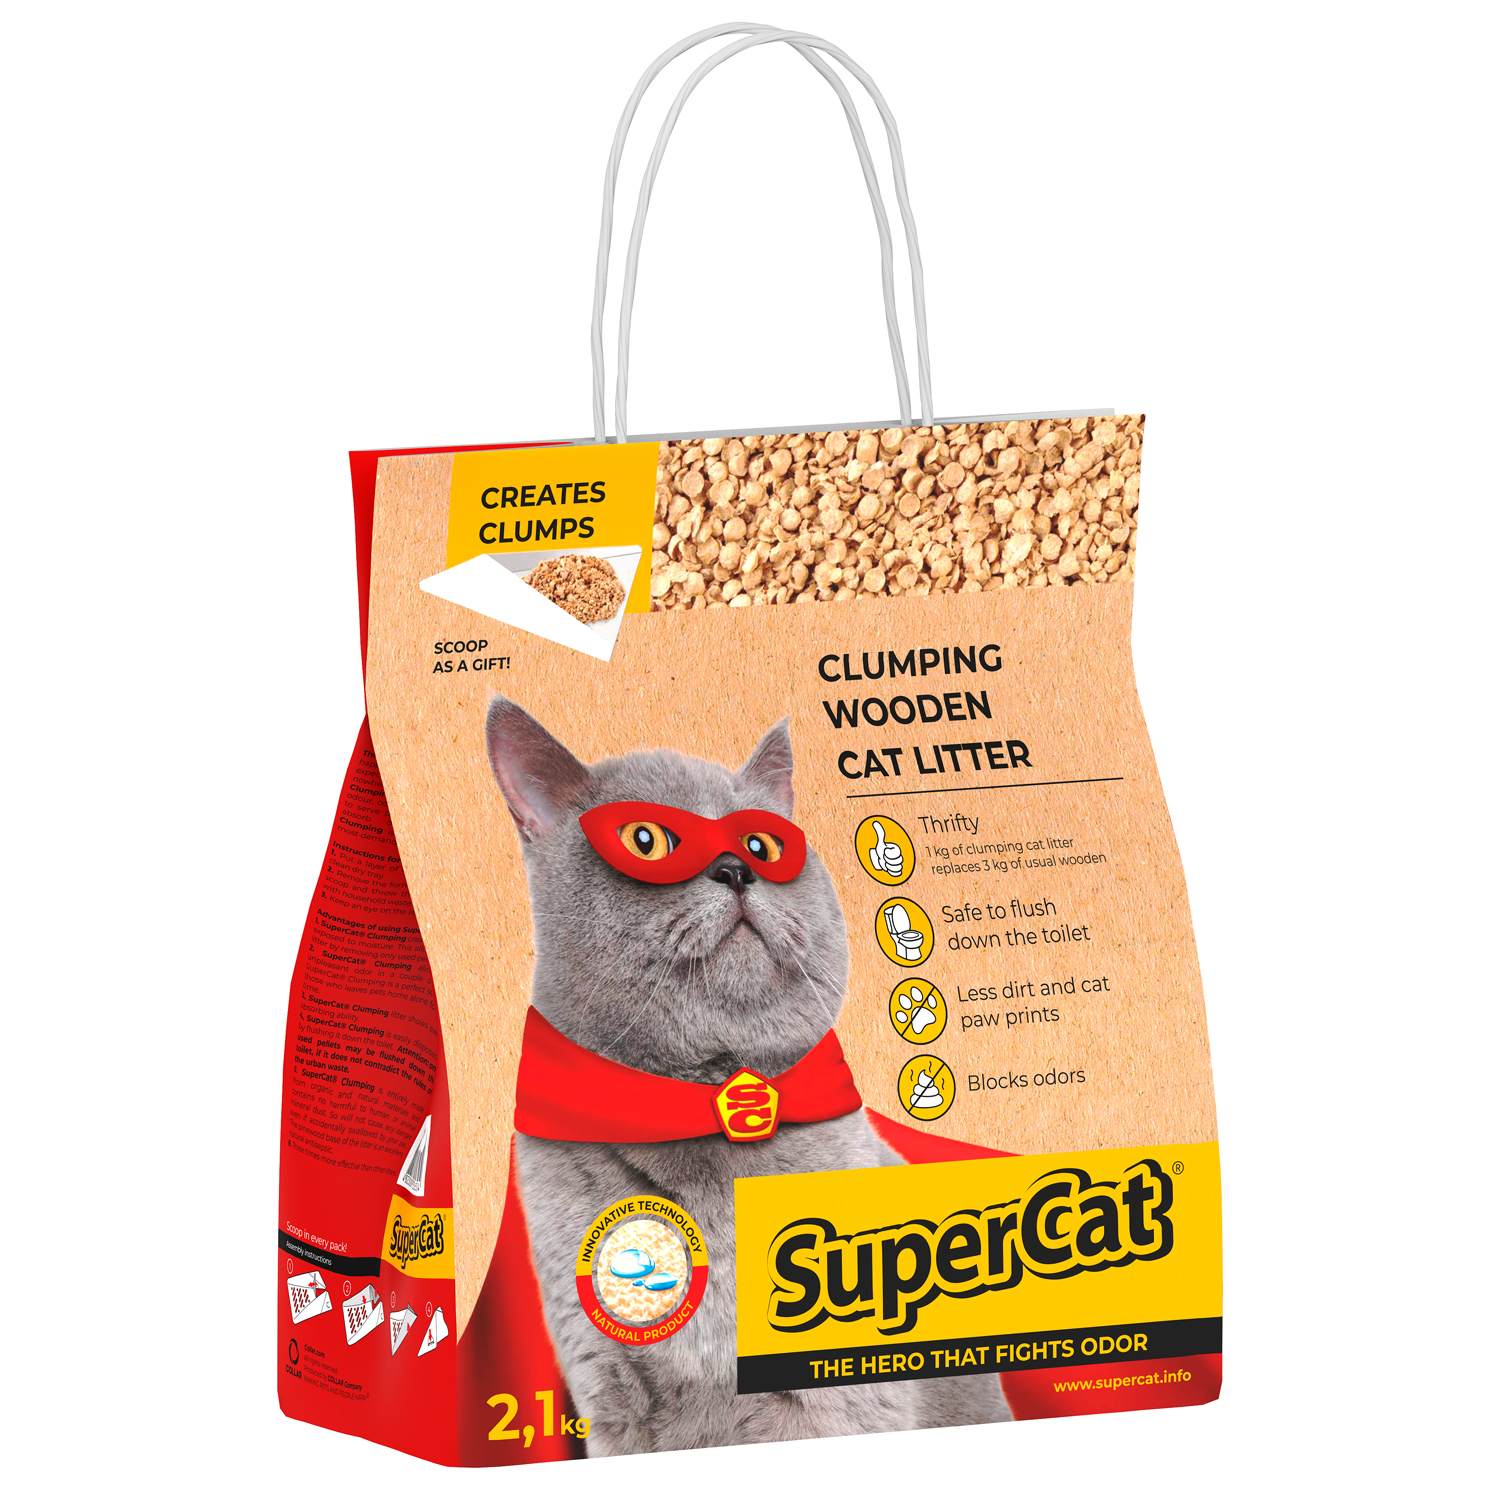 SuperCat Wooden Clumping Cat Litter